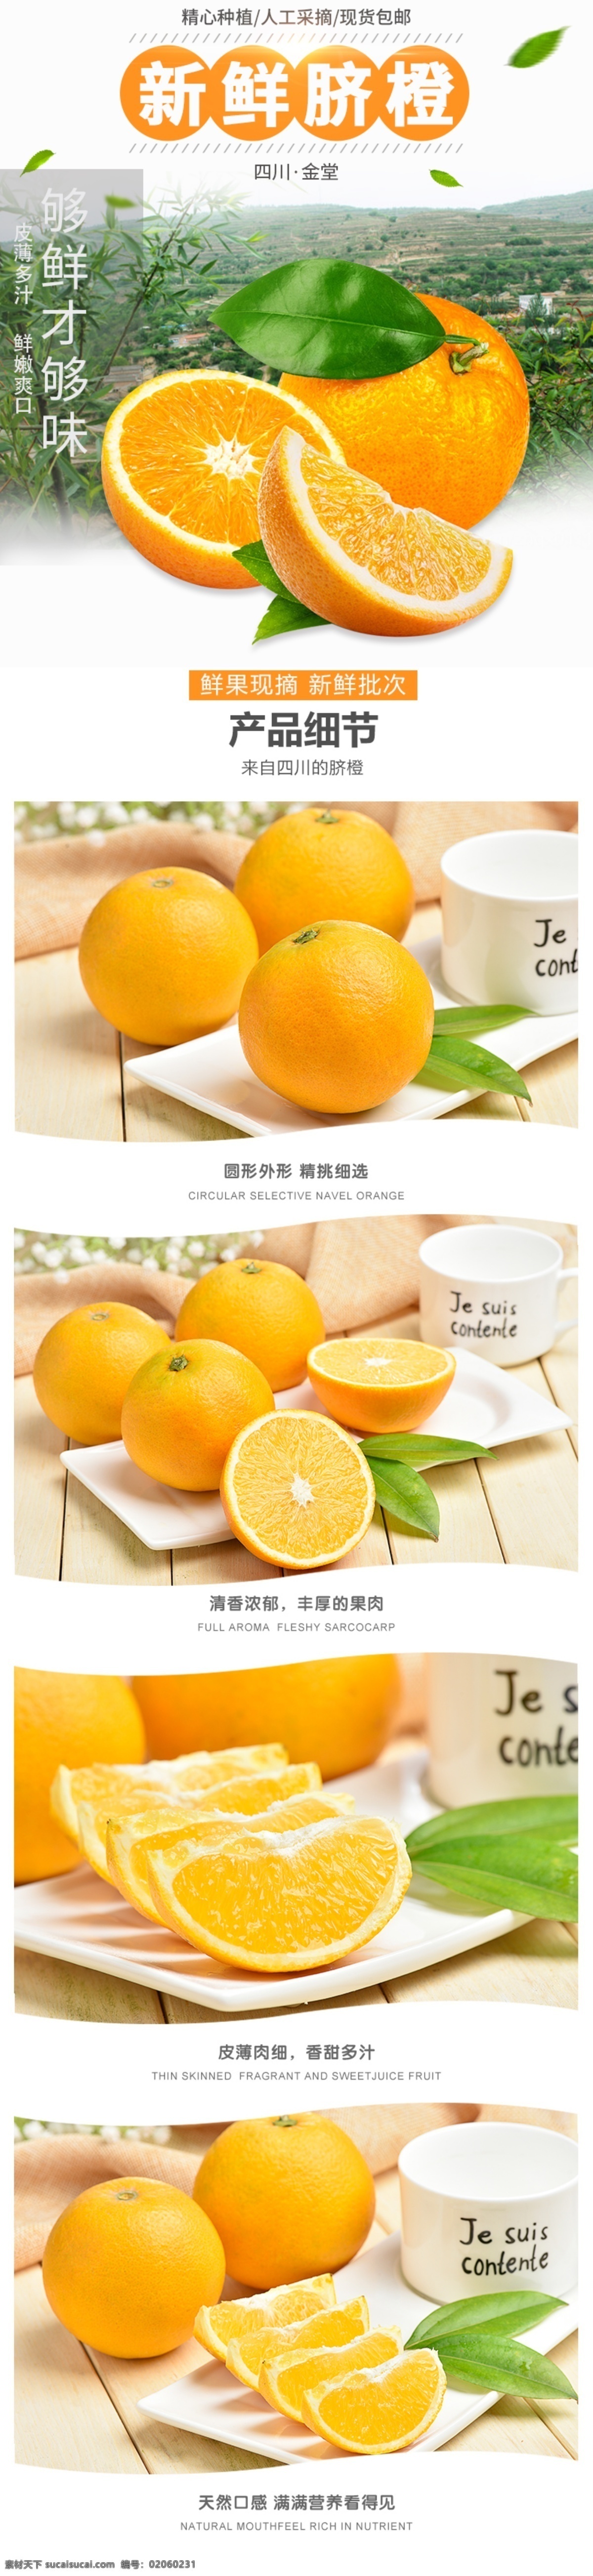 电商 淘宝 脐橙 橙子 生鲜 水果 详情 页 电商淘宝 生鲜水果 详情页